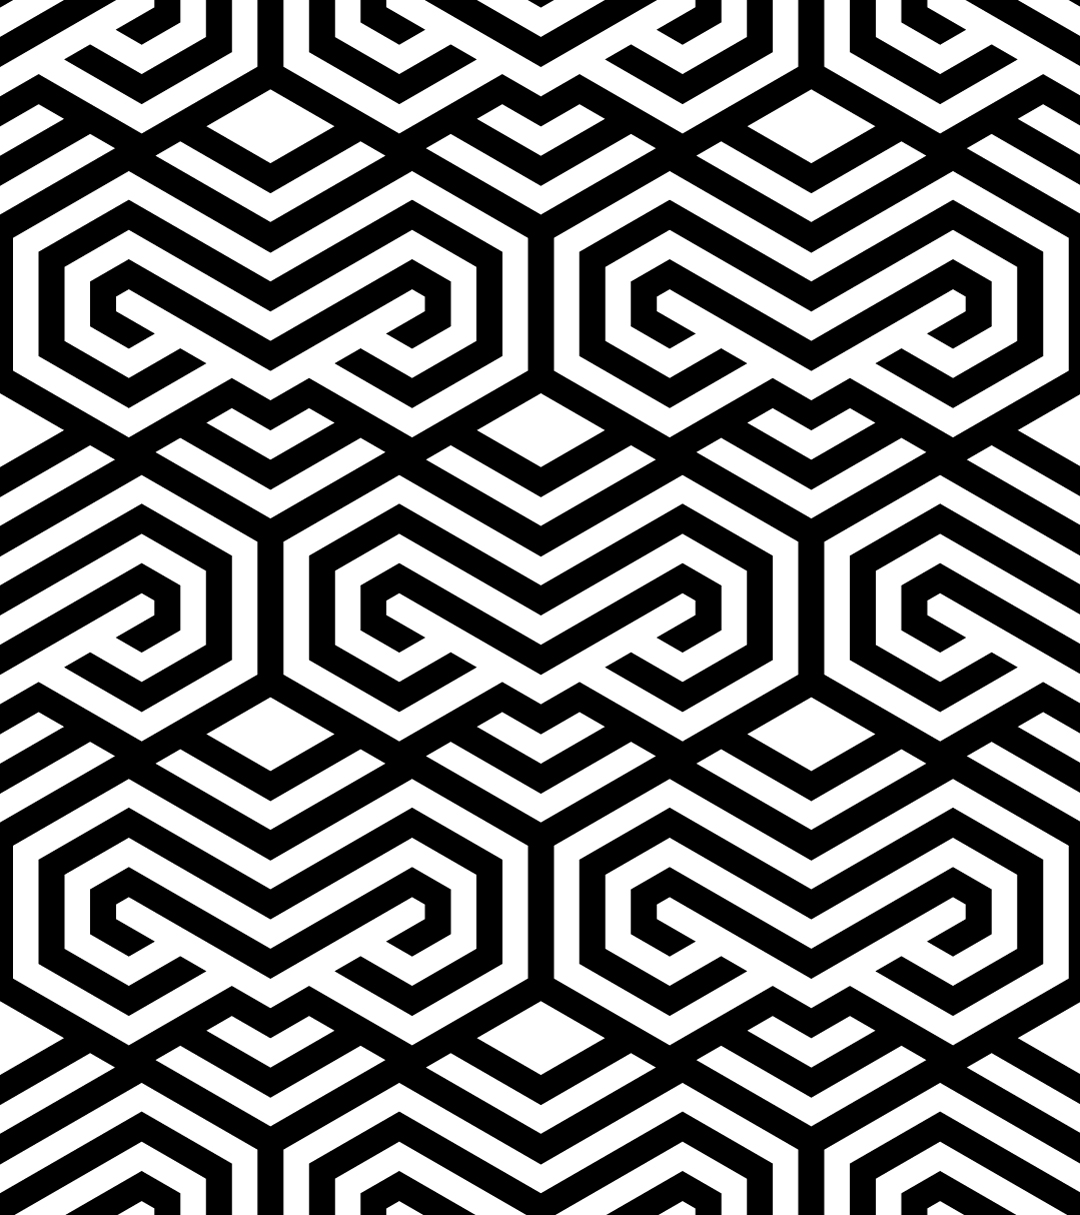 黑白几何抽象无缝底纹背景矢量素材6